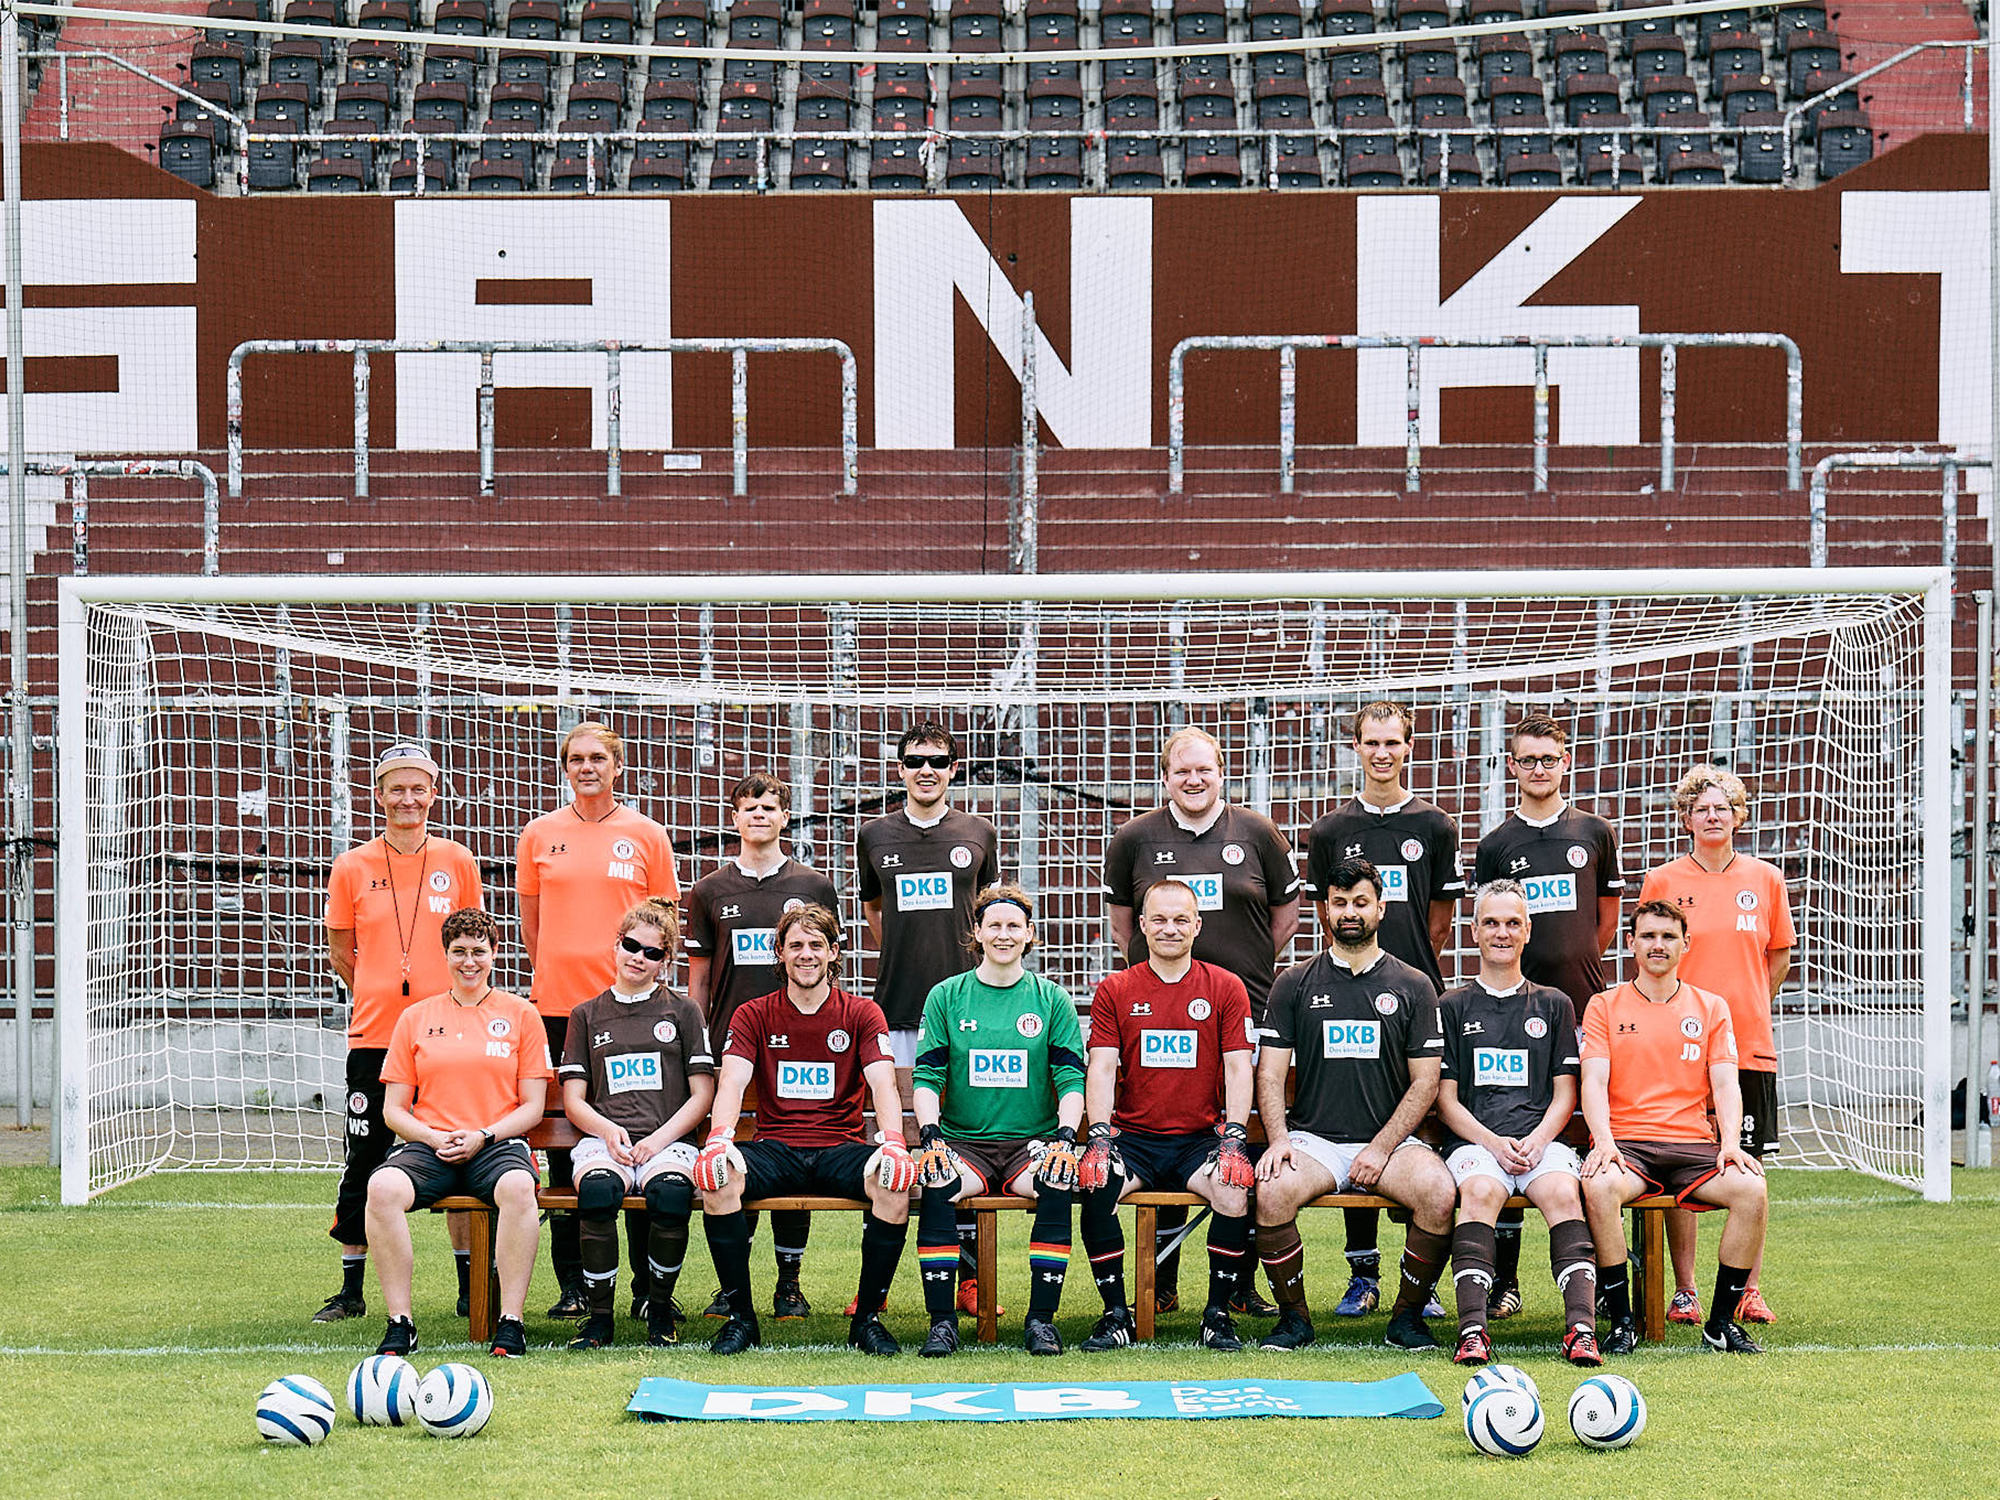 Das Blindenfußballteam des FC St. Pauli beim Mannschaftsfoto auf dem Rasen des Millerntor-Stadions.